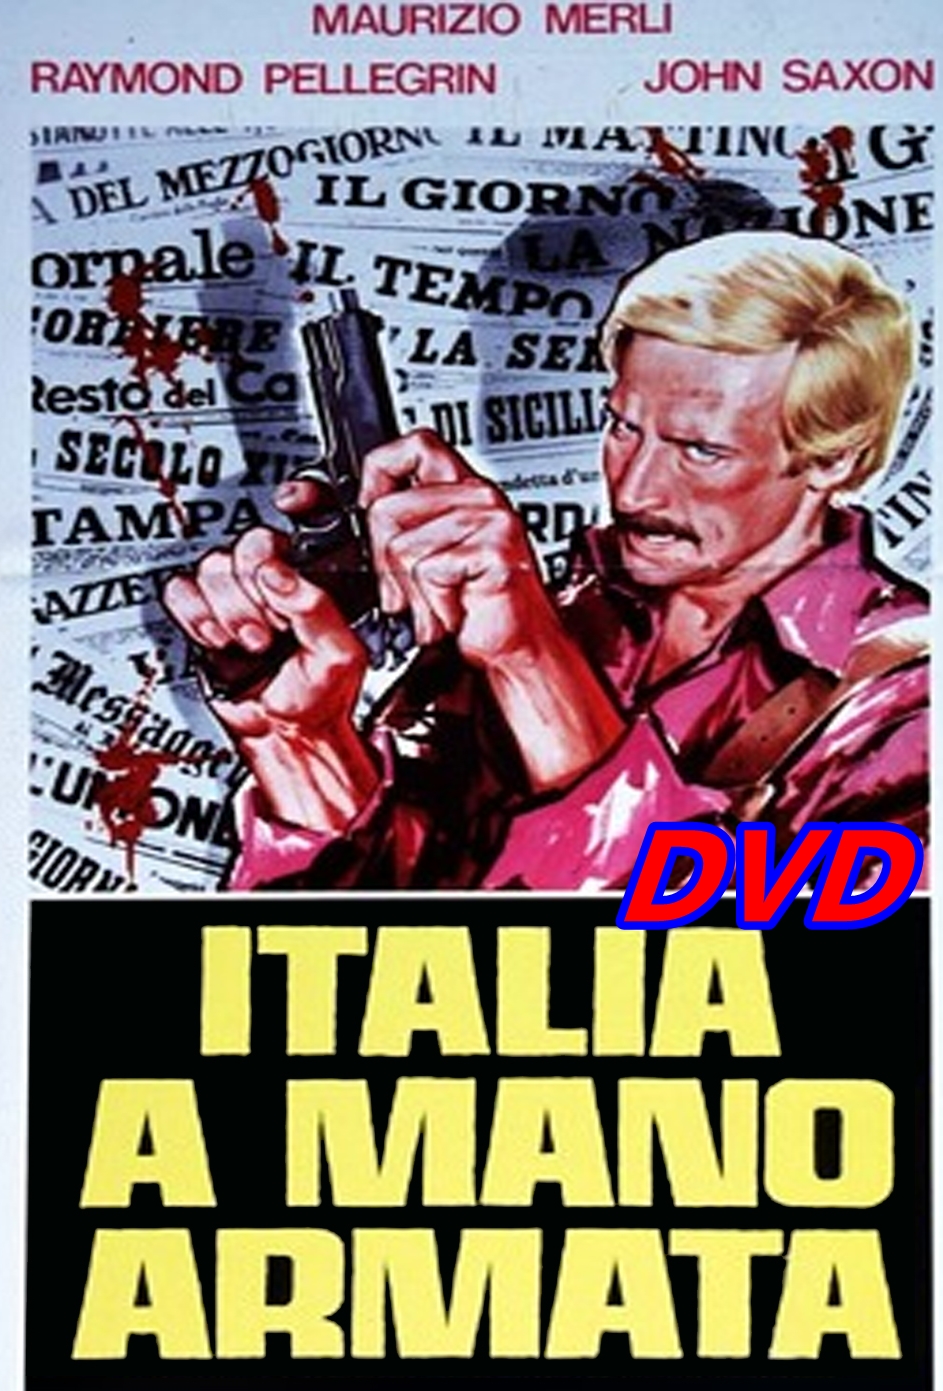 ITALIA_A_MANO_ARMATA_DVD_1976_Franco_Martinelli_Maurizio_Merli